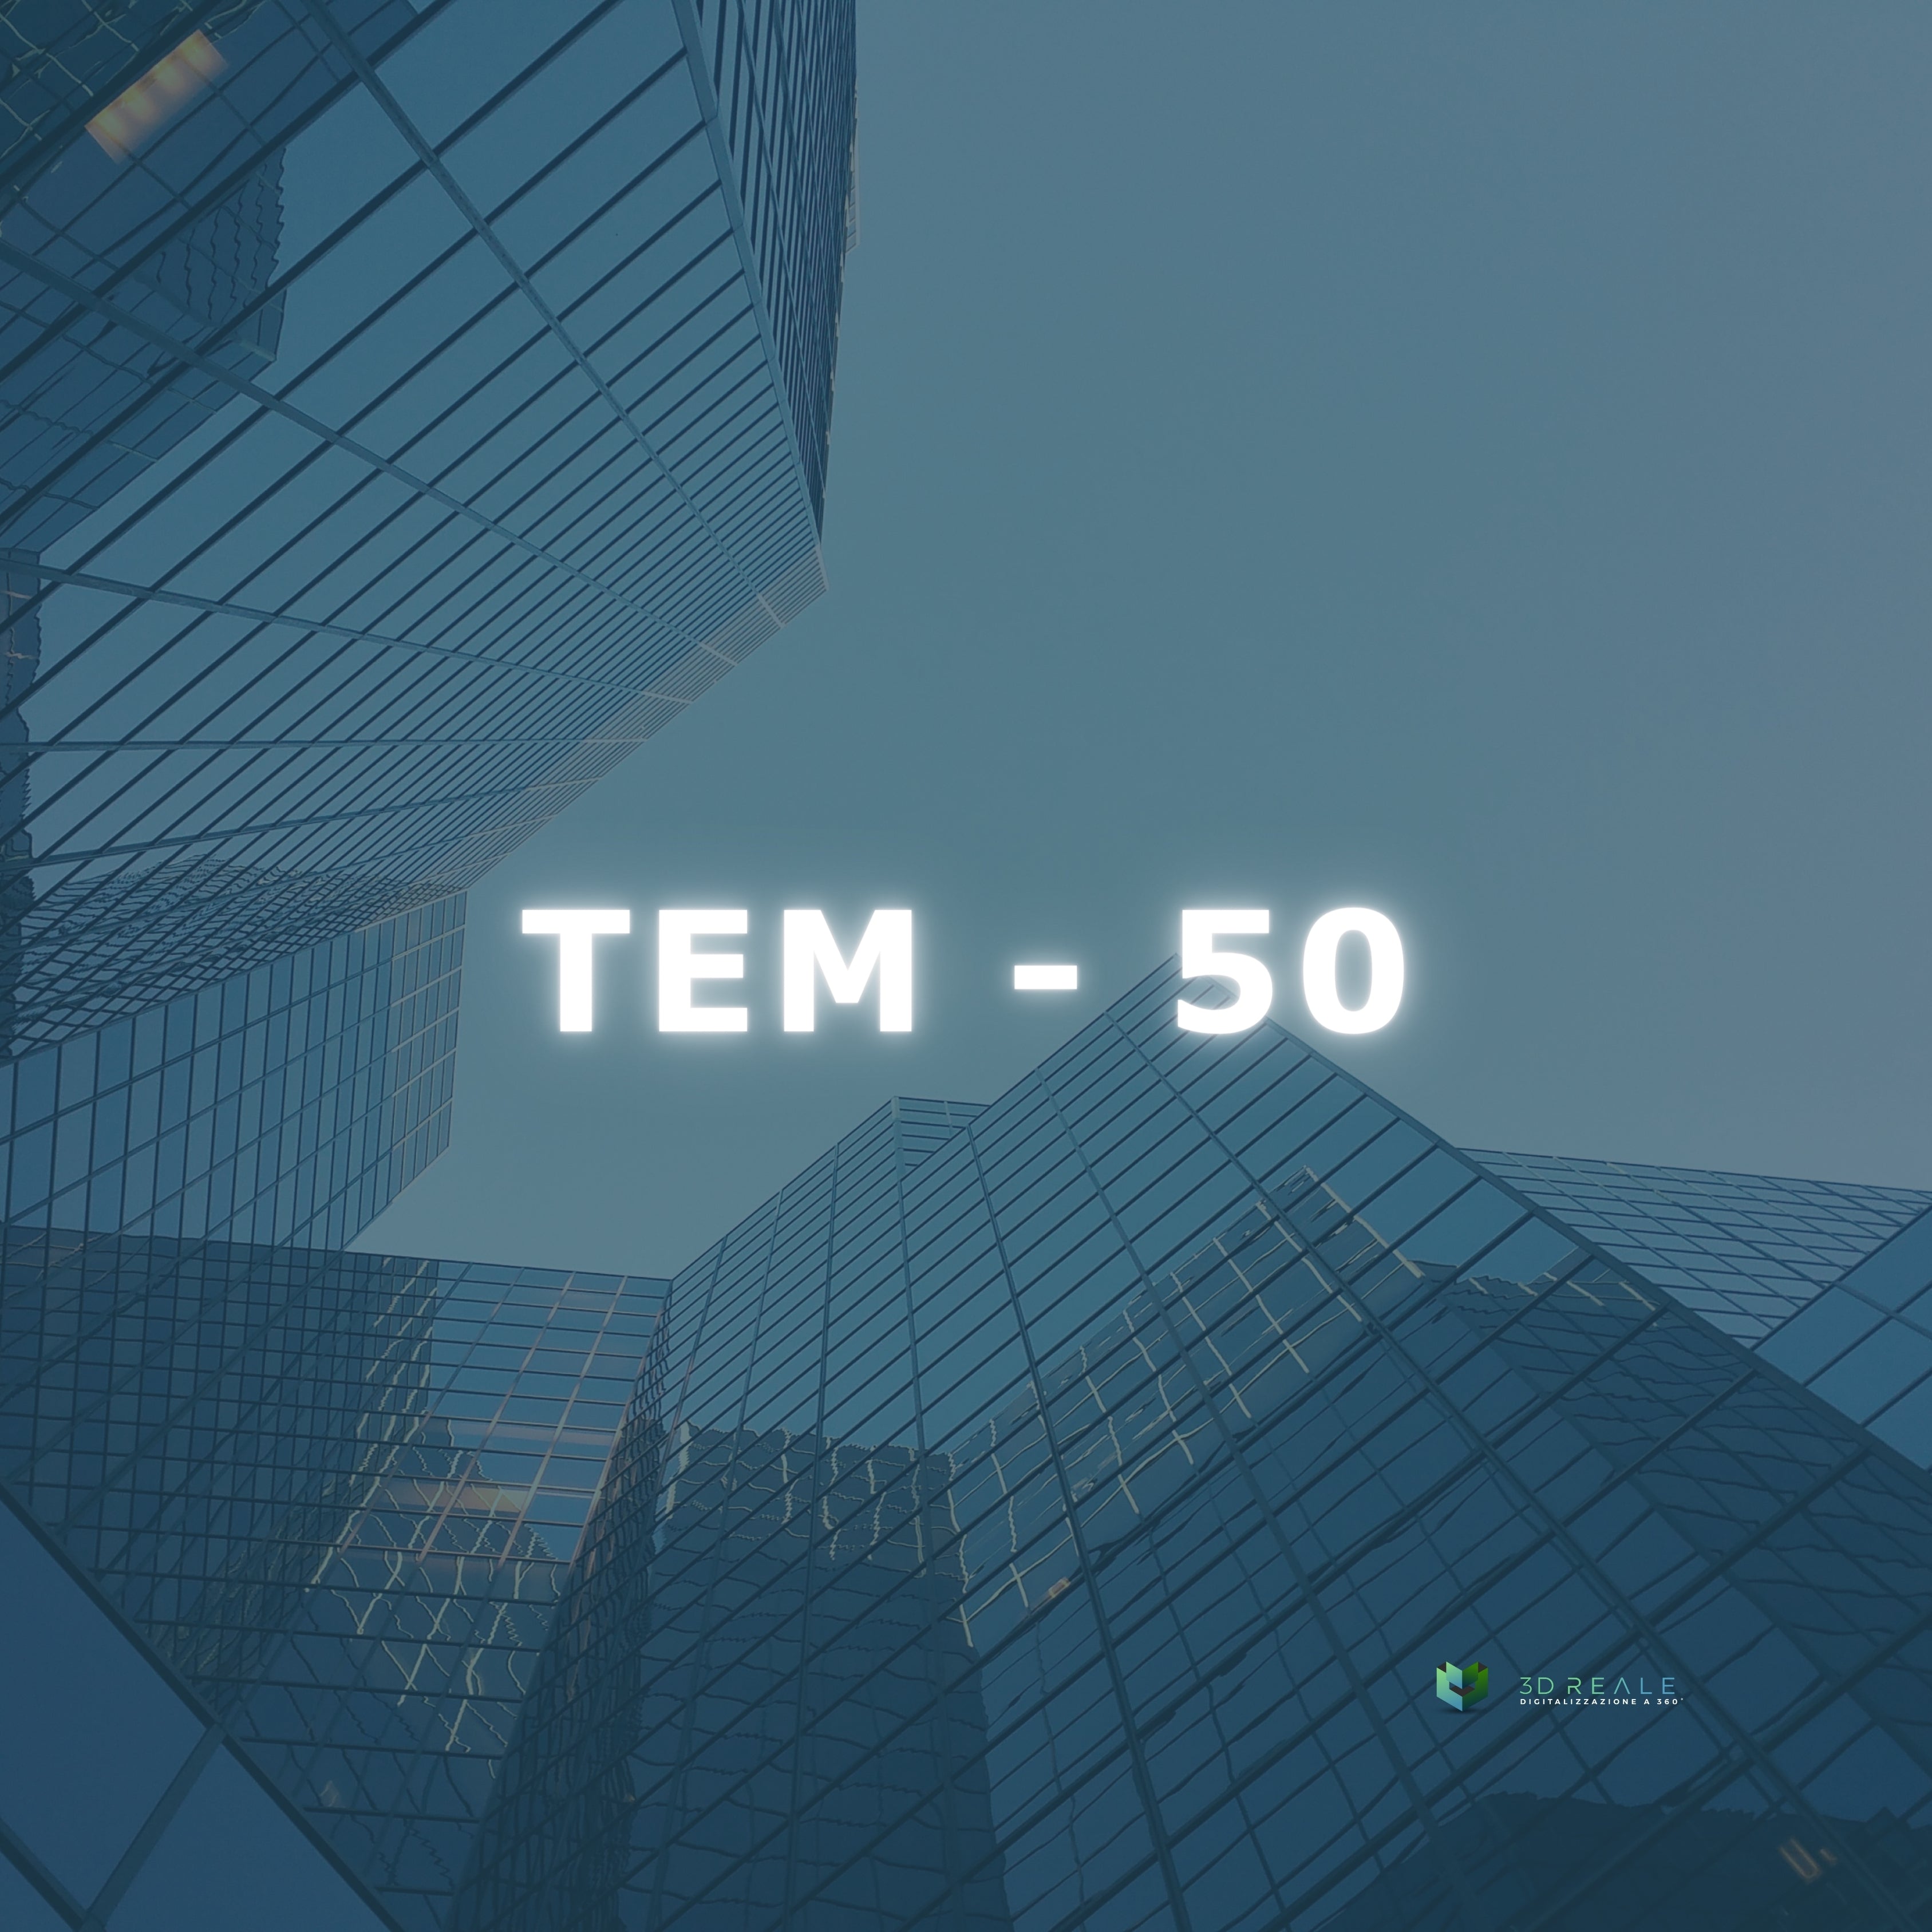 TEM - 50